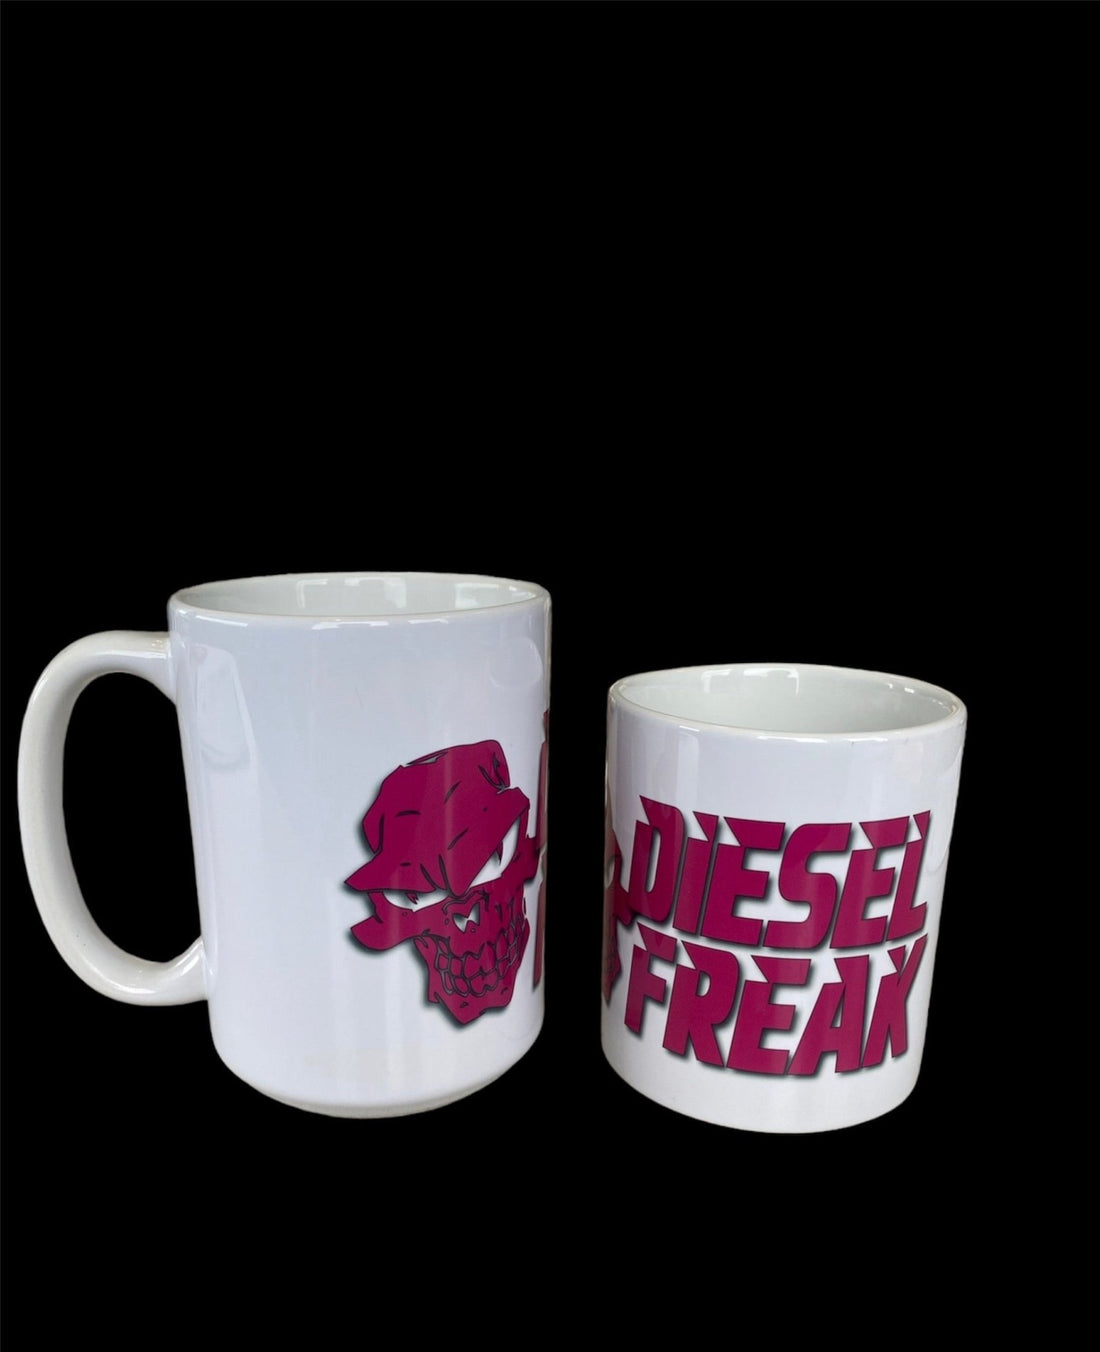 Diesel Freak Pink Stacked Coffee Mug - Diesel Freak